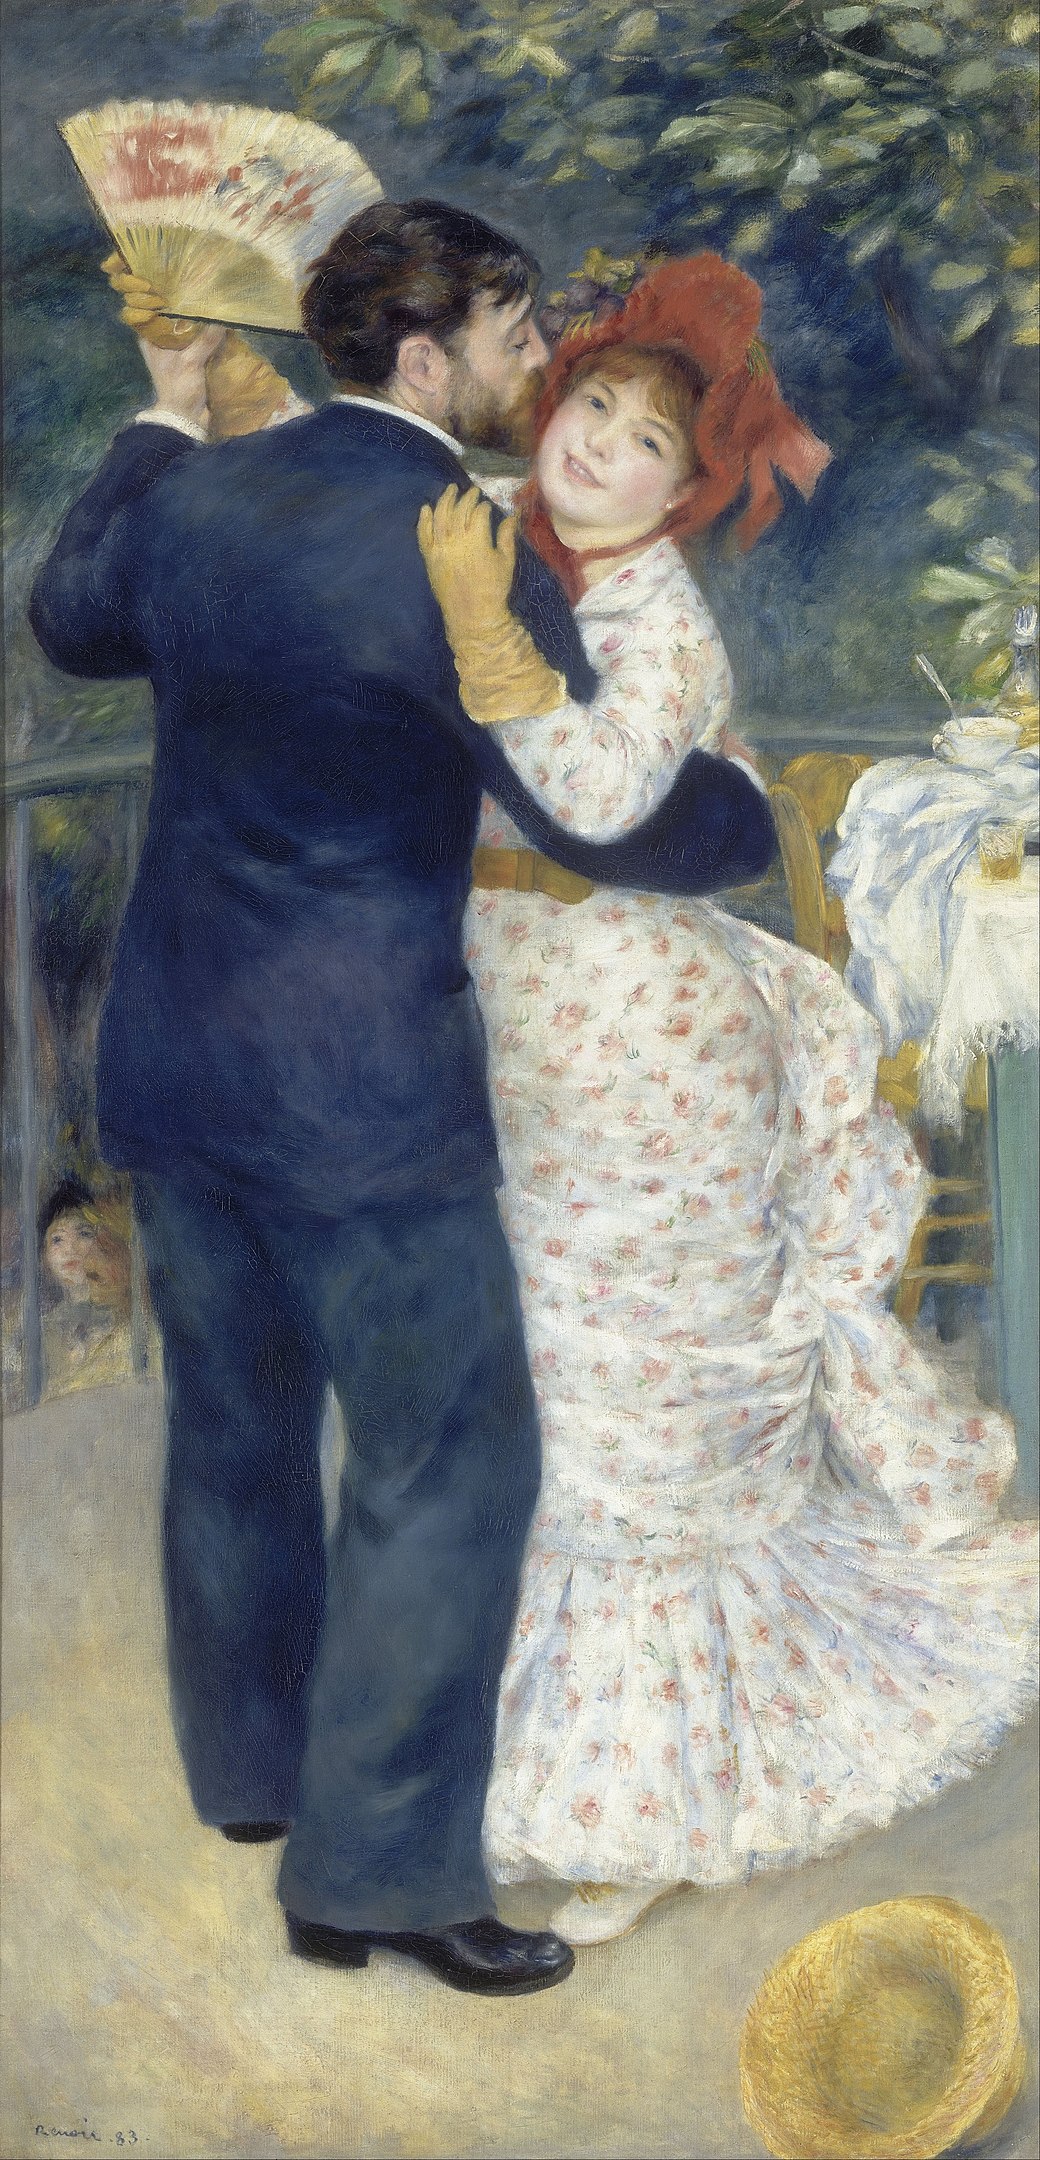 Dança na Cidade by Pierre-Auguste Renoir - 1883 - 180 x 90 cm Musée d'Orsay